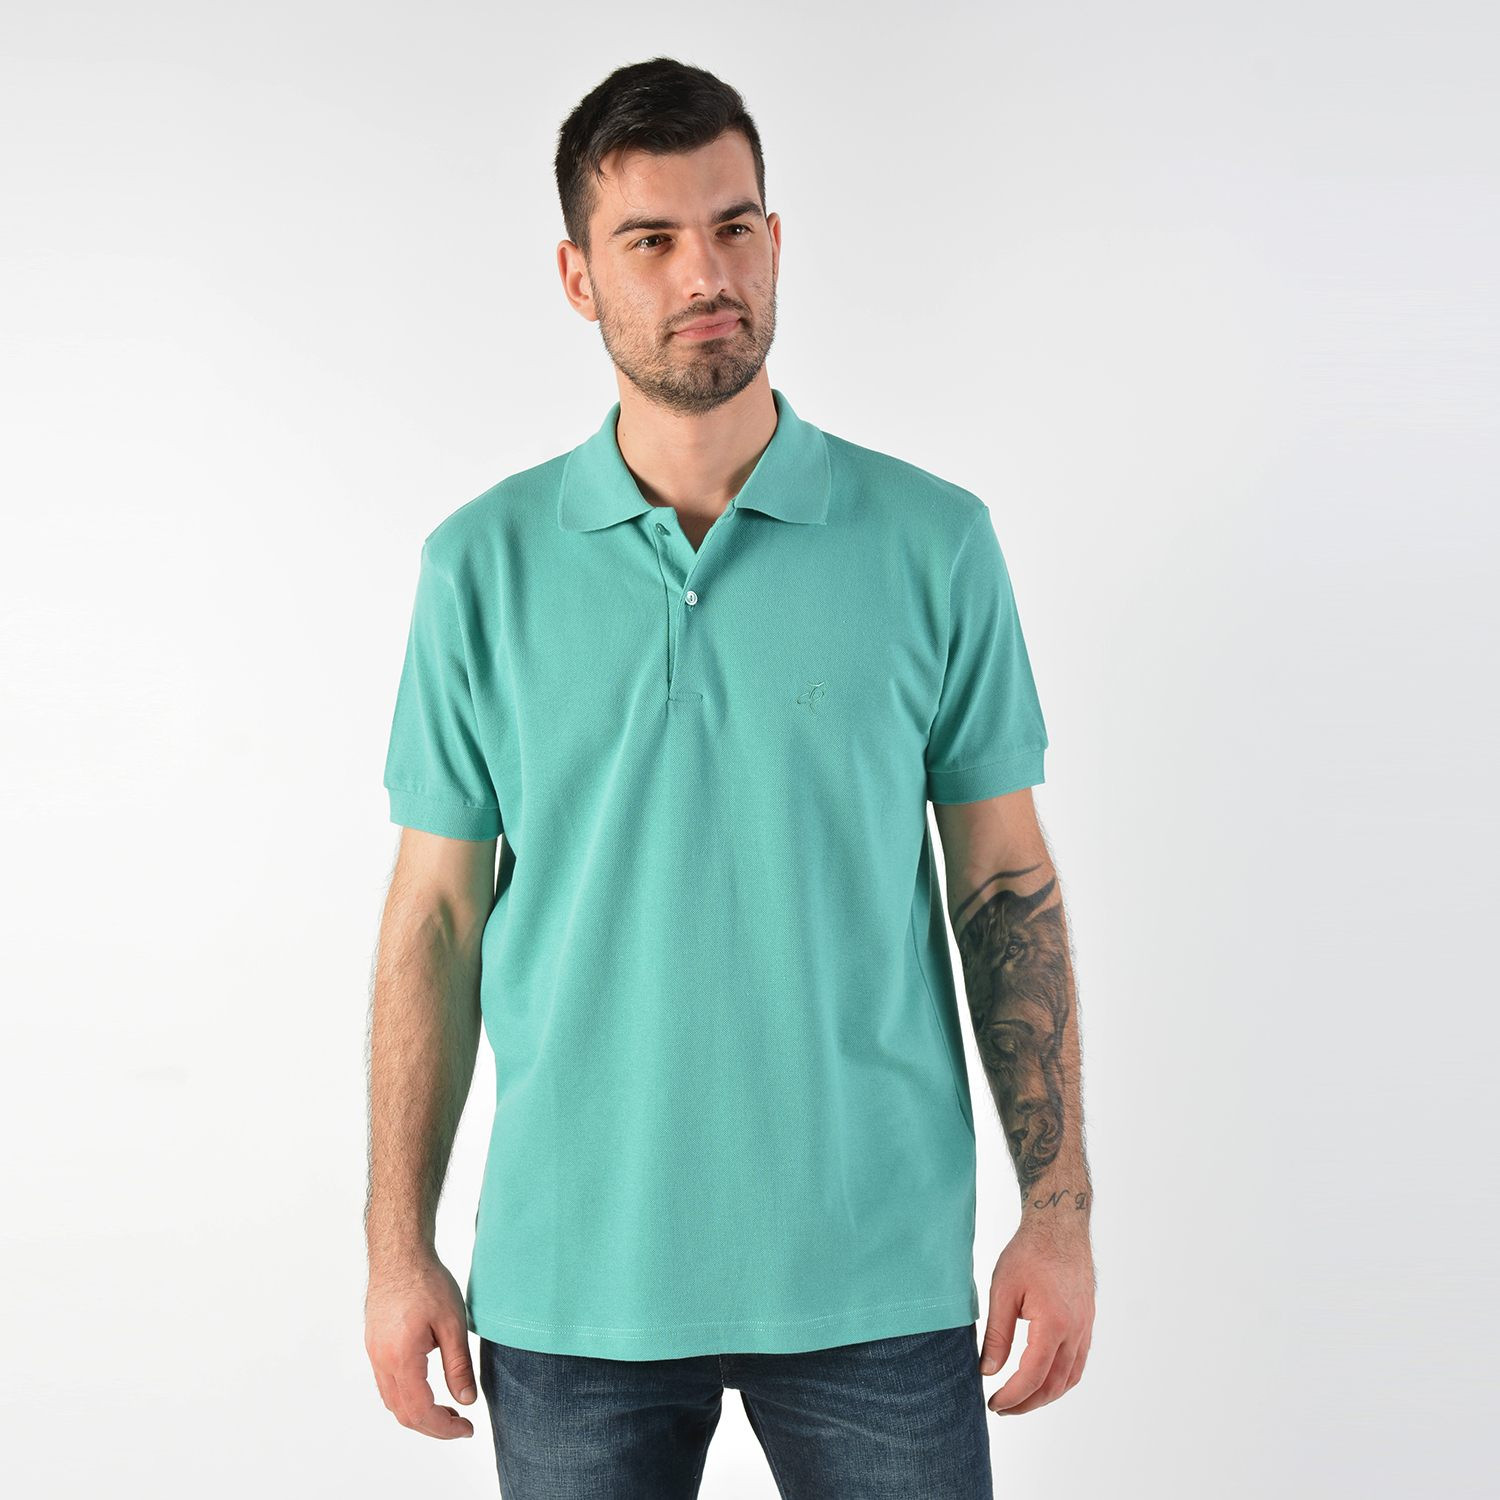 Target Men's Polo T-Shirt - Ανδρική Polo Μπλούζα (9000030015_12825)